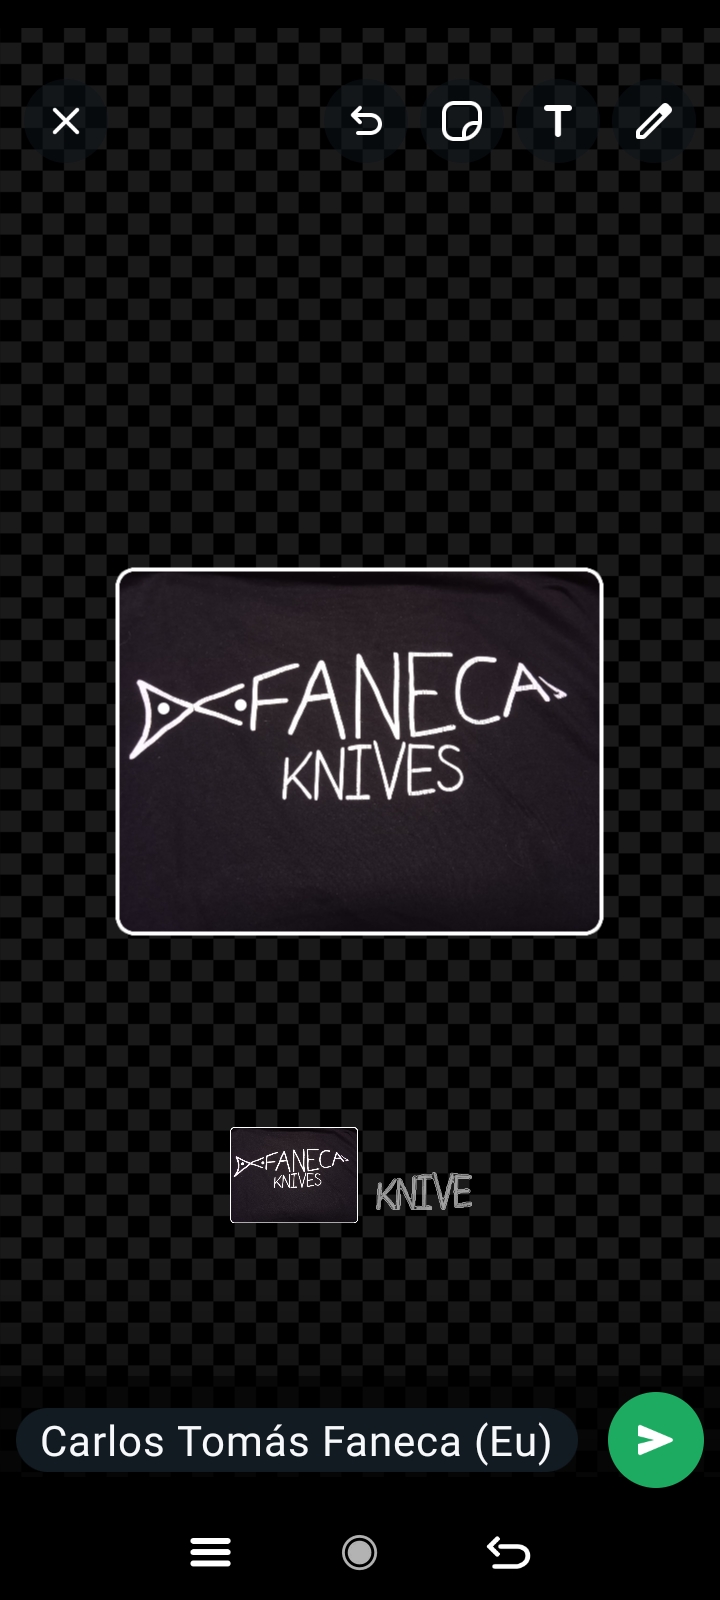 Faneca knives - Alcobaça - Serviço de Biscates